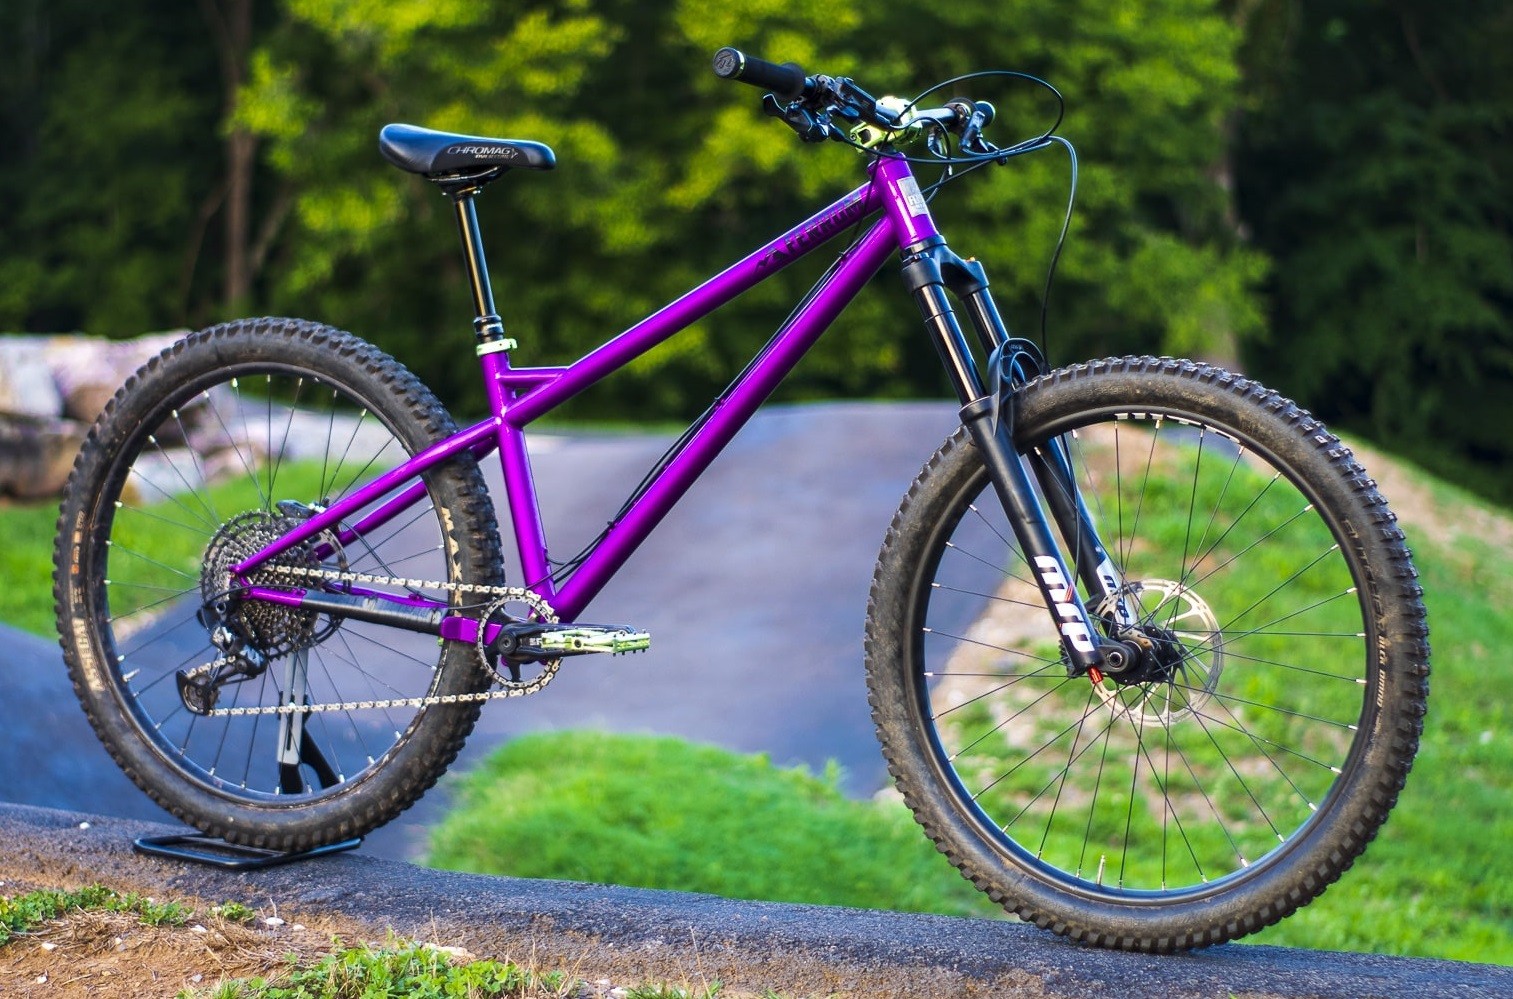 https://ferrumbikes.com/wp-content/uploads/2020/01/enduro-hardtail-chromoly-steel-frame-mountain-bike-frame.jpg